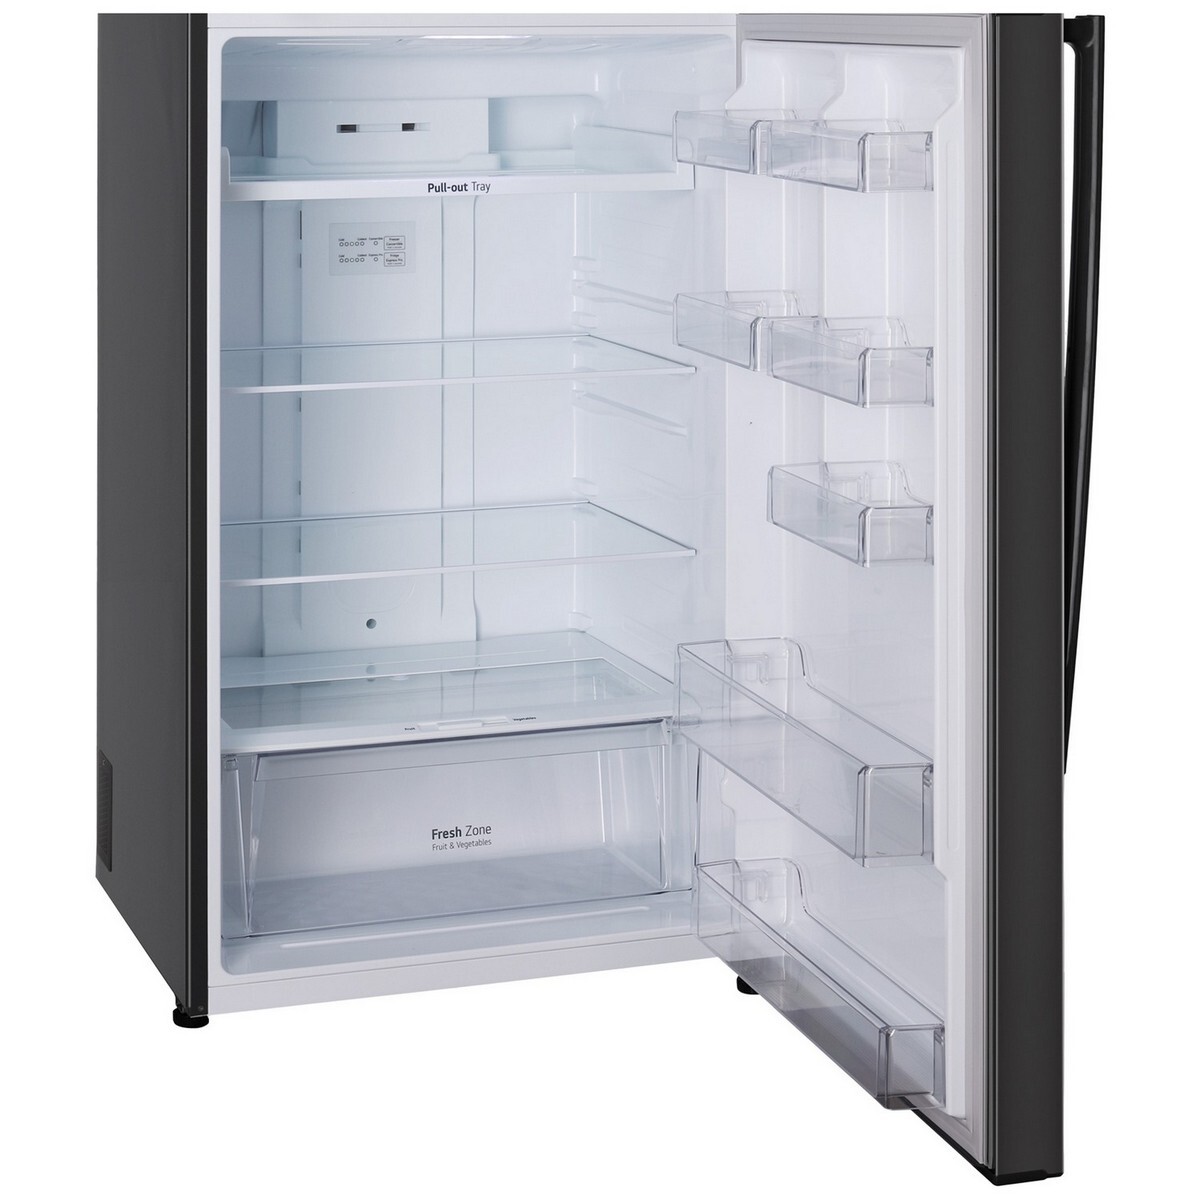 LG Frost Free Double Door Refrigerator GL-T502AESR 446L Ebony Sheen